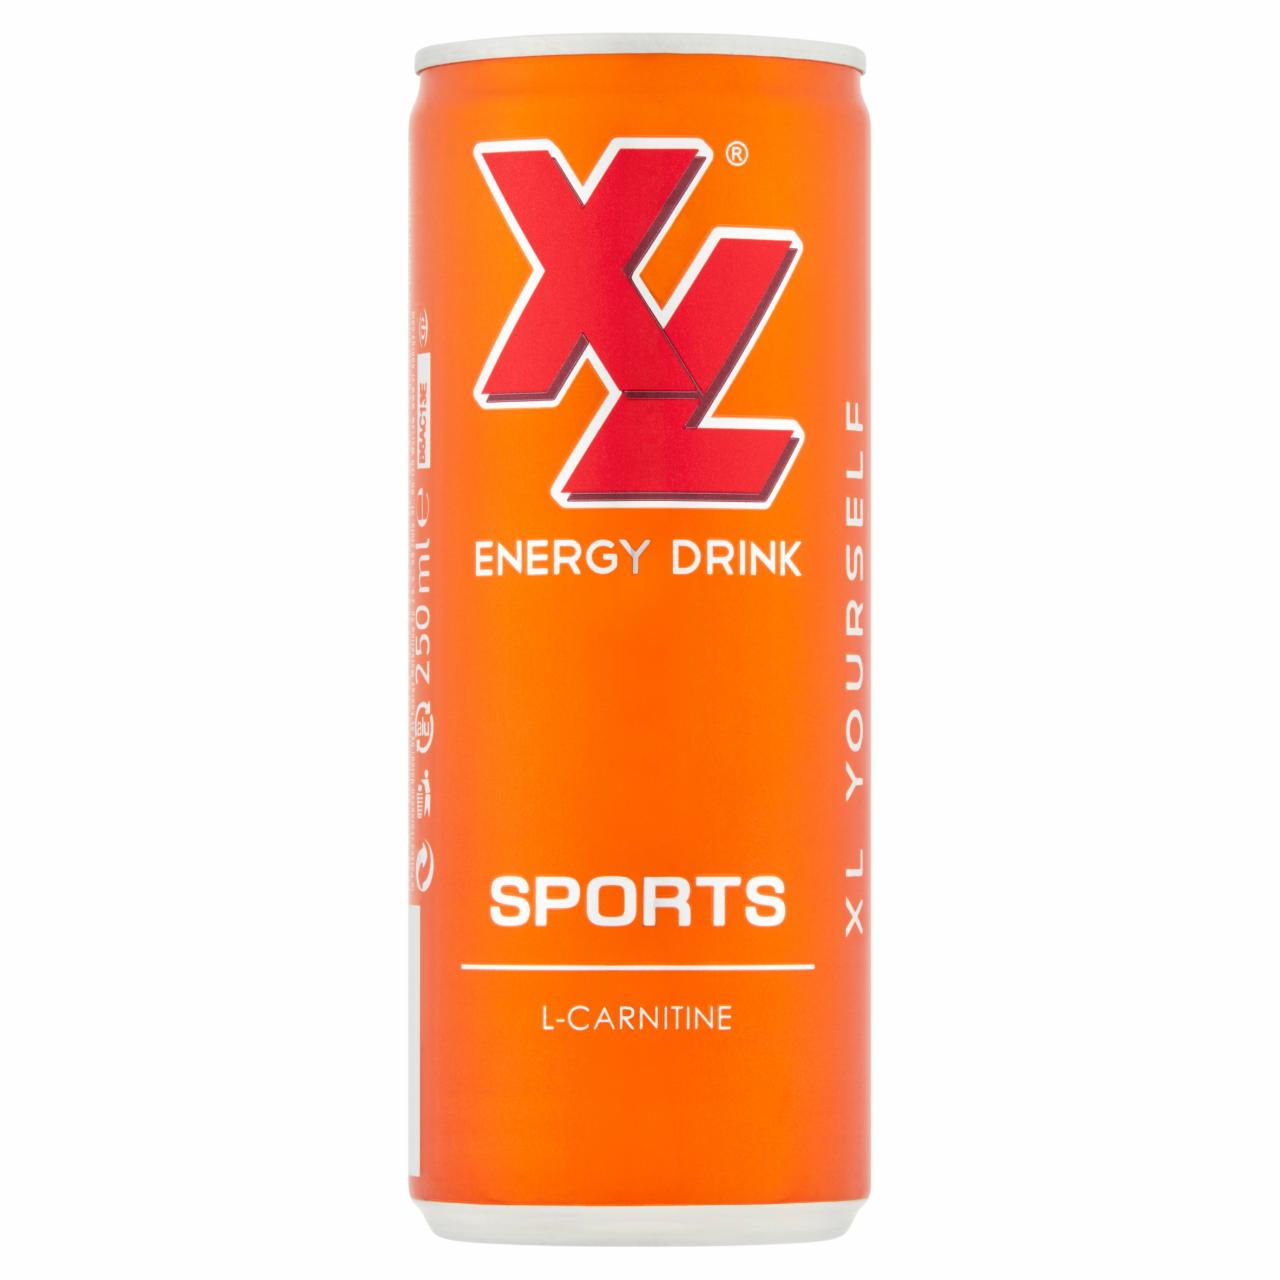 Zdjęcia - XL Energy Drink Sports Napój gazowany 250 ml